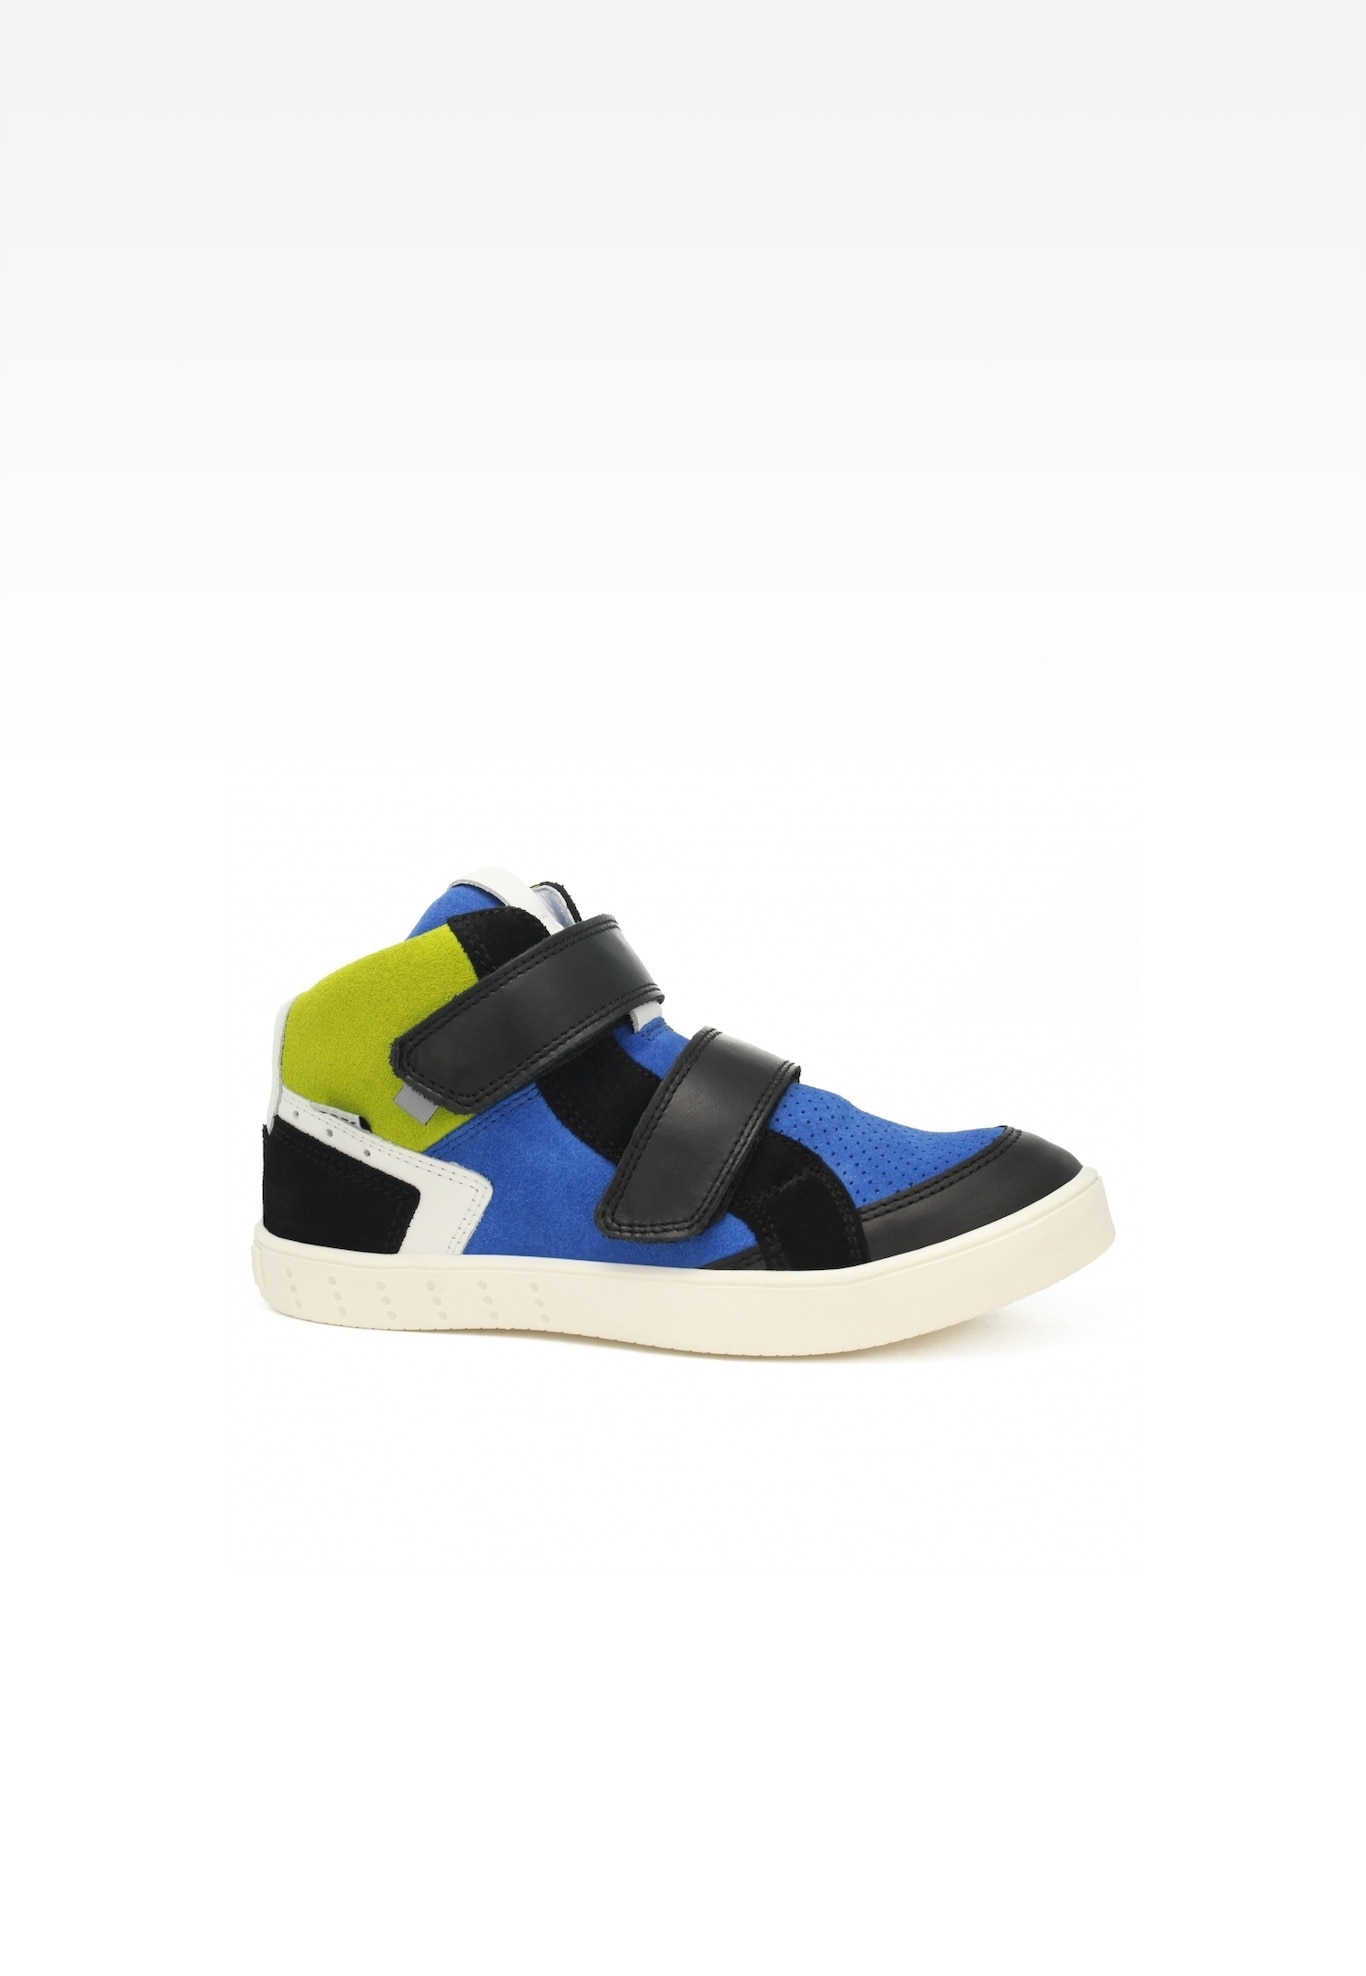 Sneakers BARTEK 27414-025, niebiesko-czarny